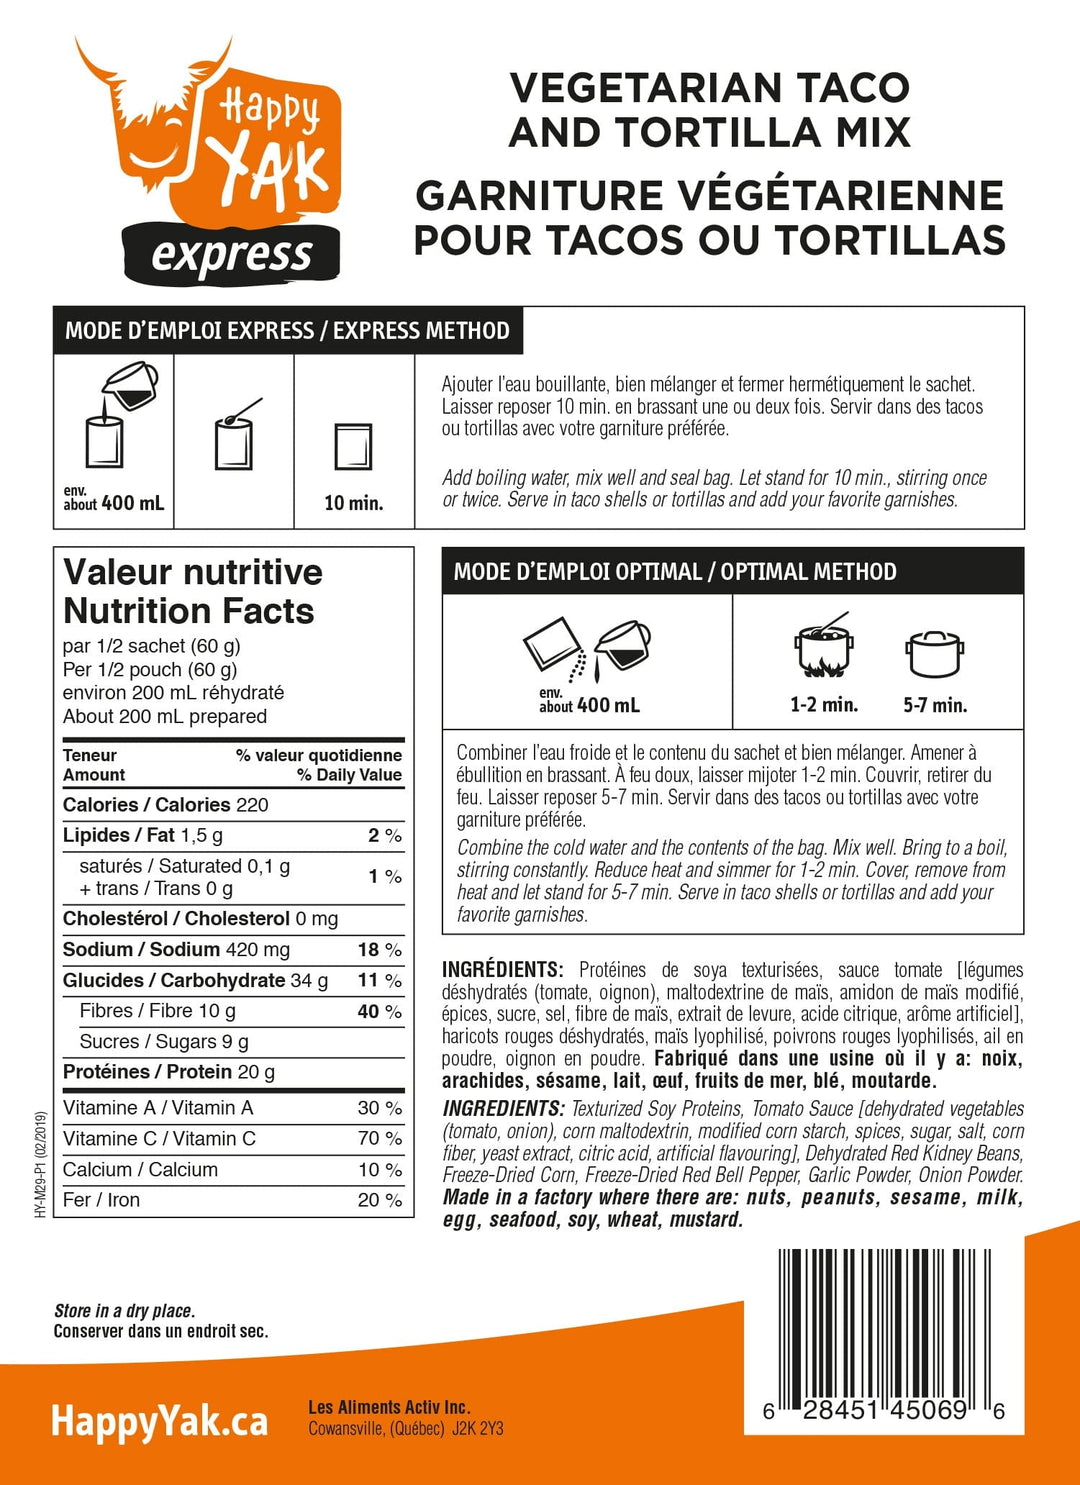 Mélange de tacos et tortillas végétariens Happy Yak - 1 portion